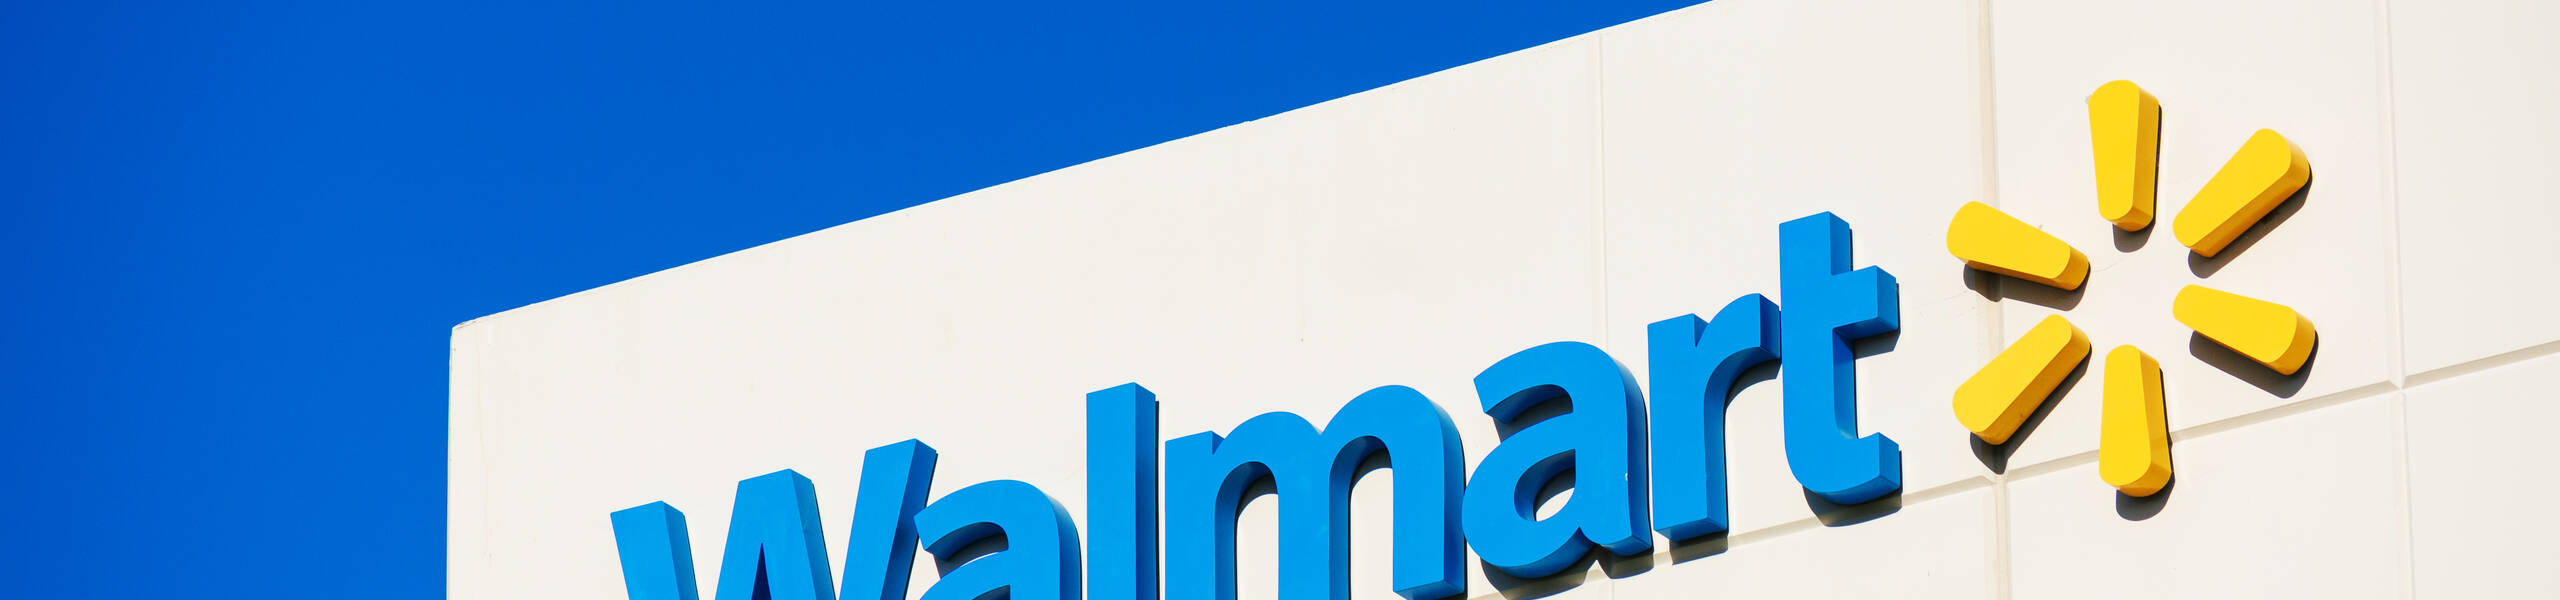 Walmart vai apresentar seu relatório em 17 de fevereiro